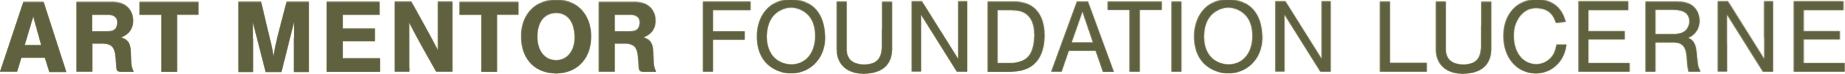 Art Mentor Foundation Lucerne logo